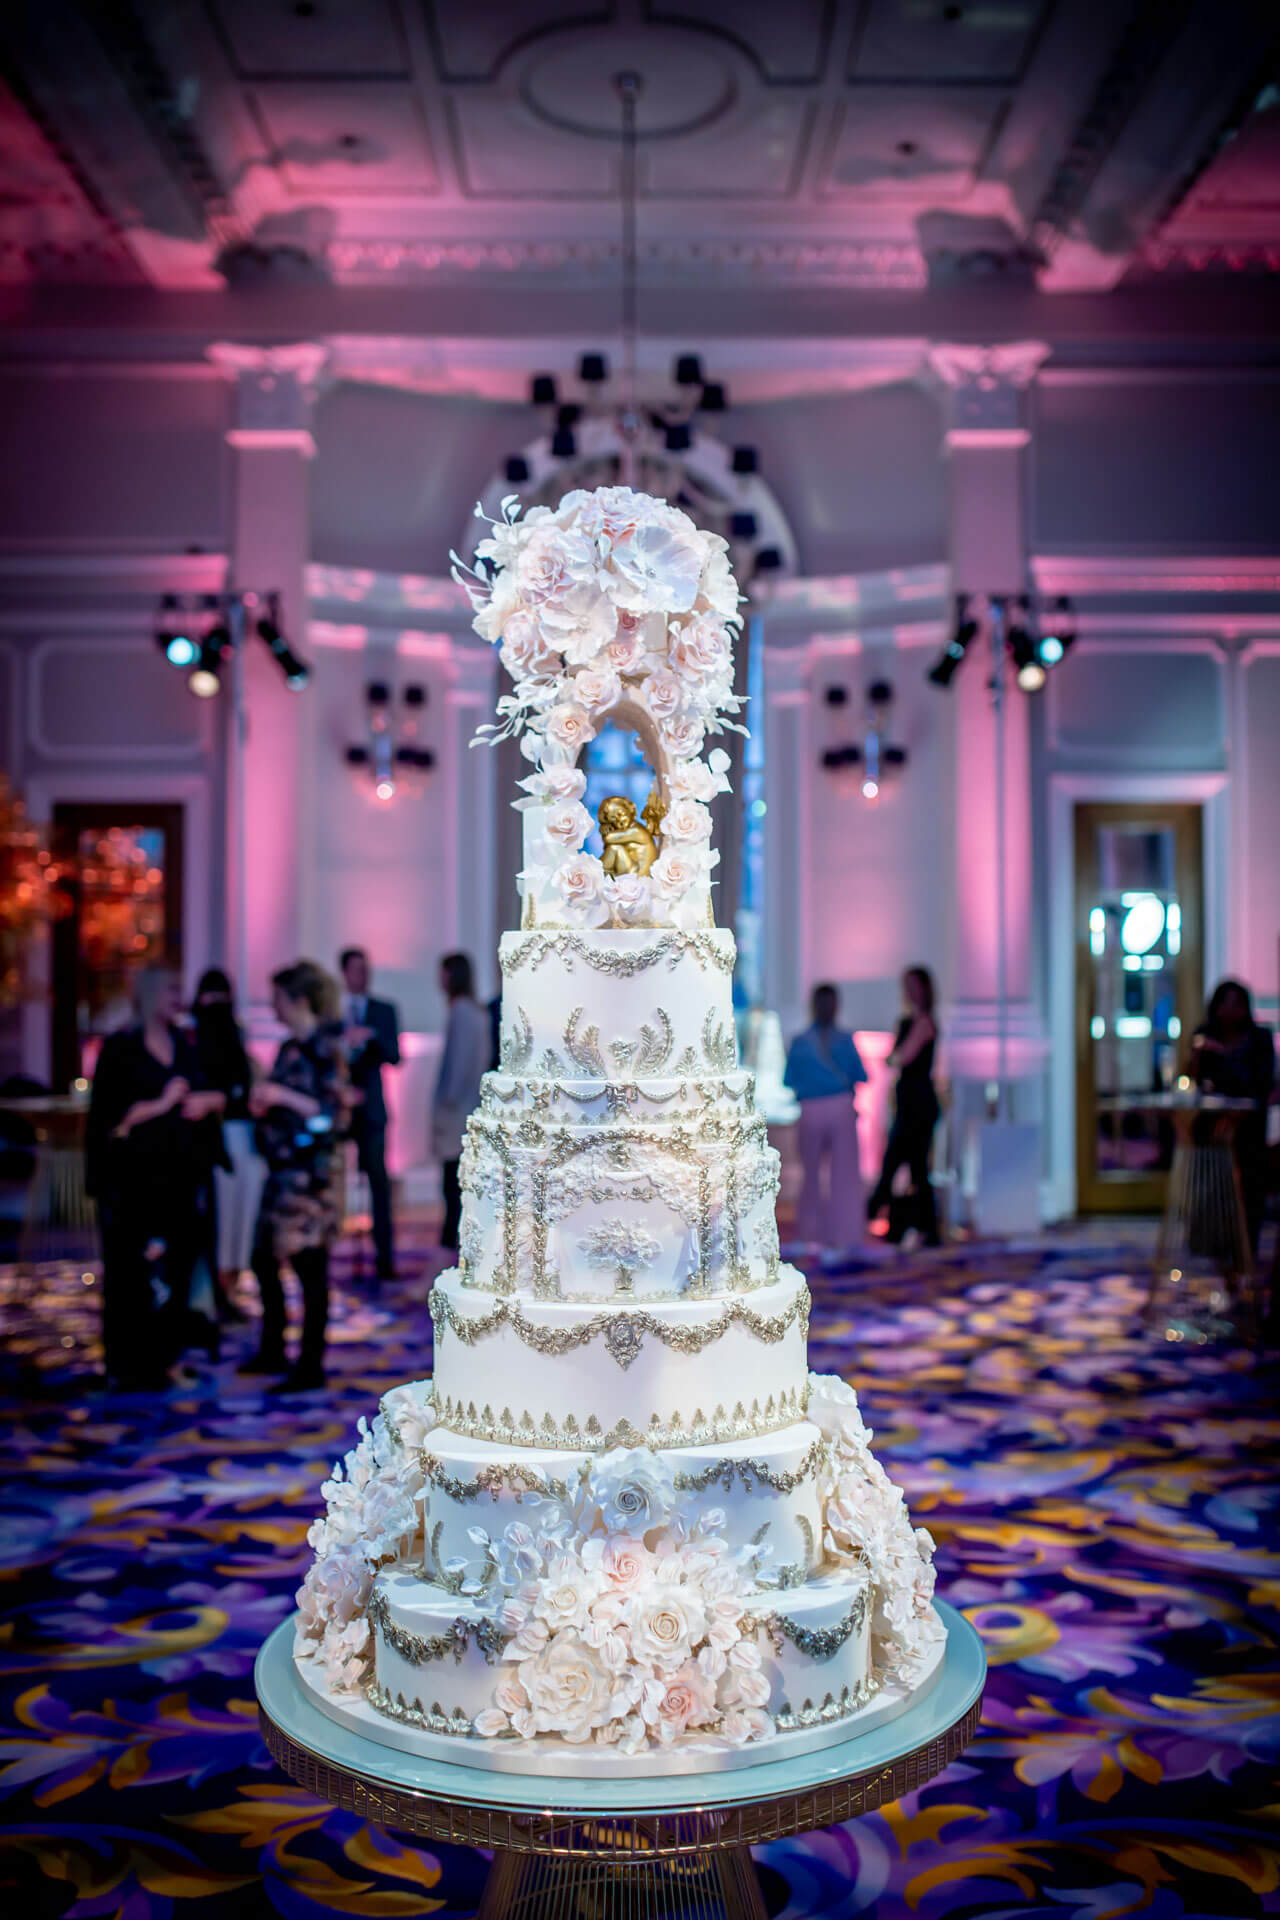 Custom Wedding Cakes By Yevnig Anoushig Corinthia Corinthia London AndyMacPhotography